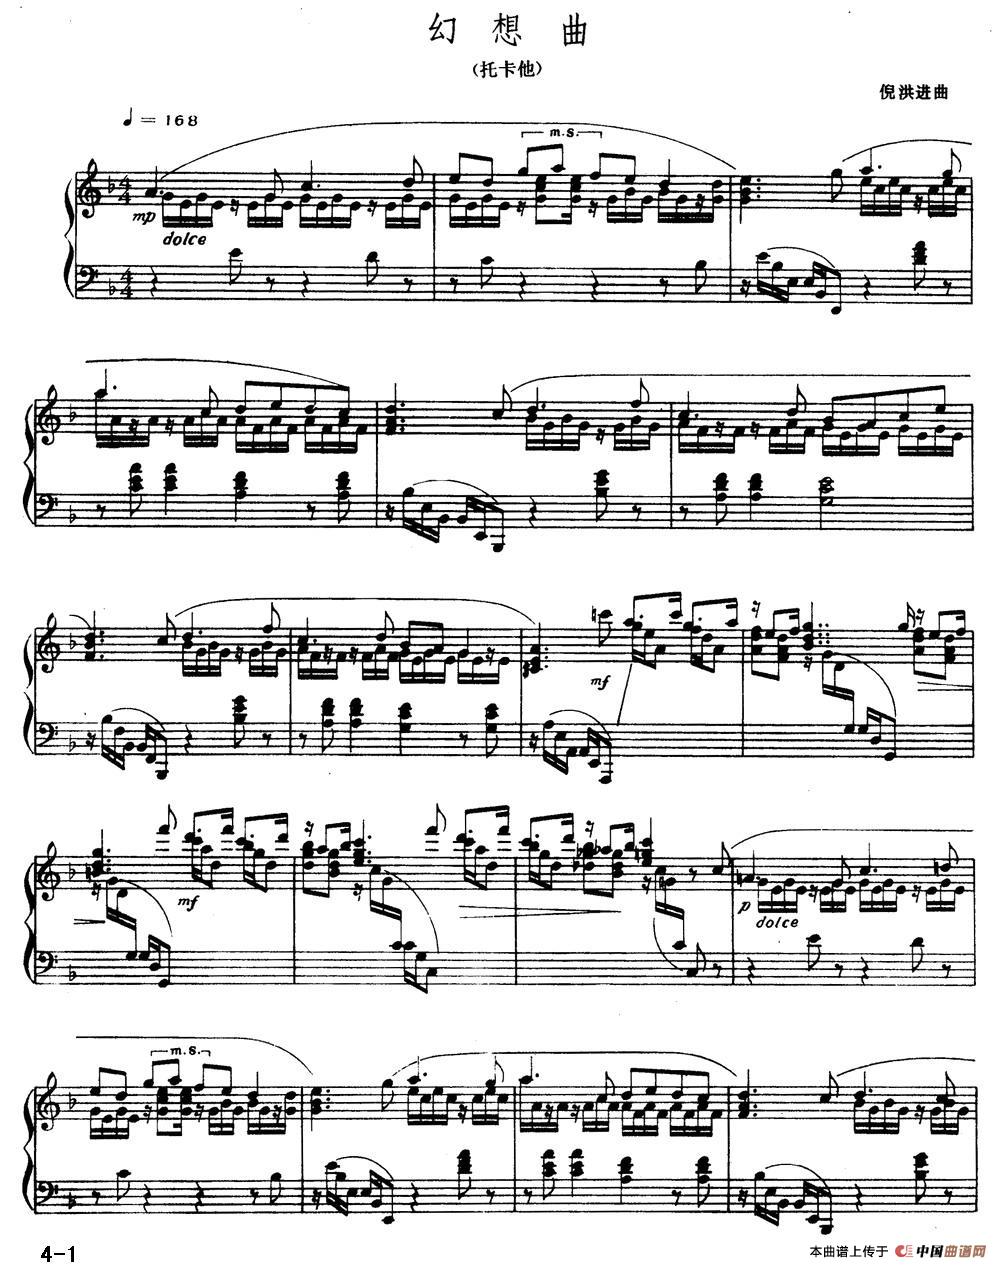 《幻想曲》钢琴曲谱图分享